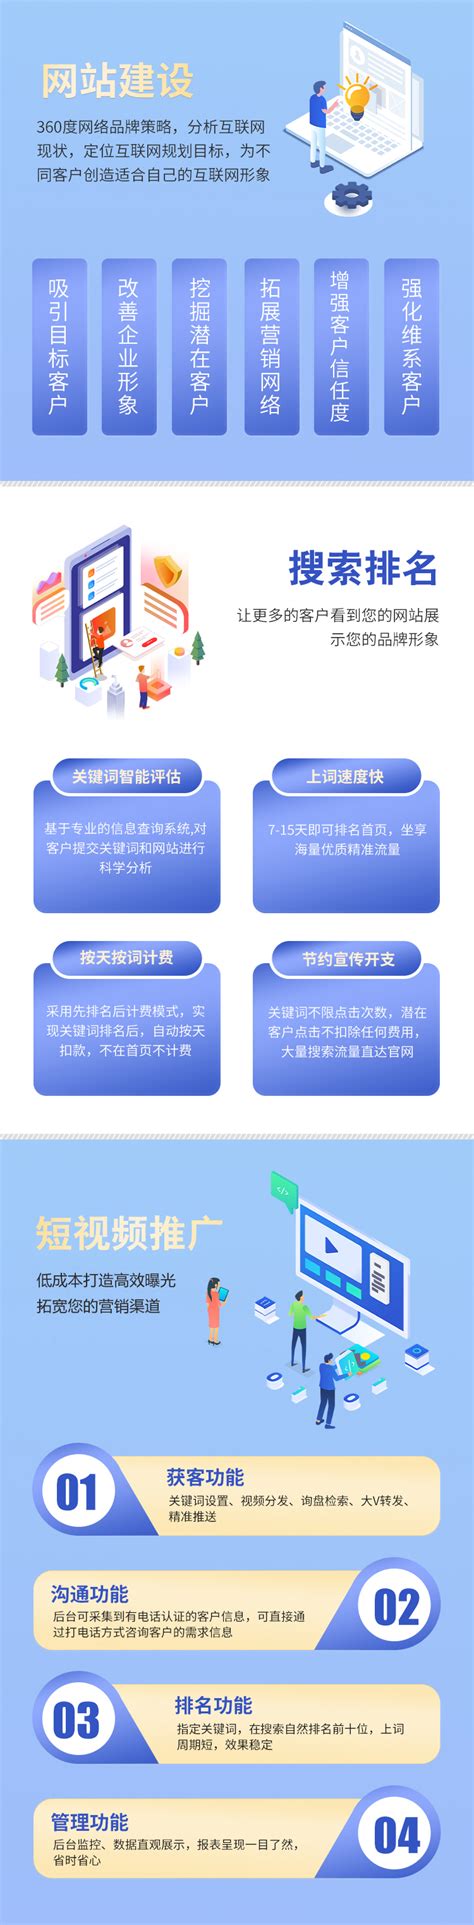 重庆网站建设开发公司